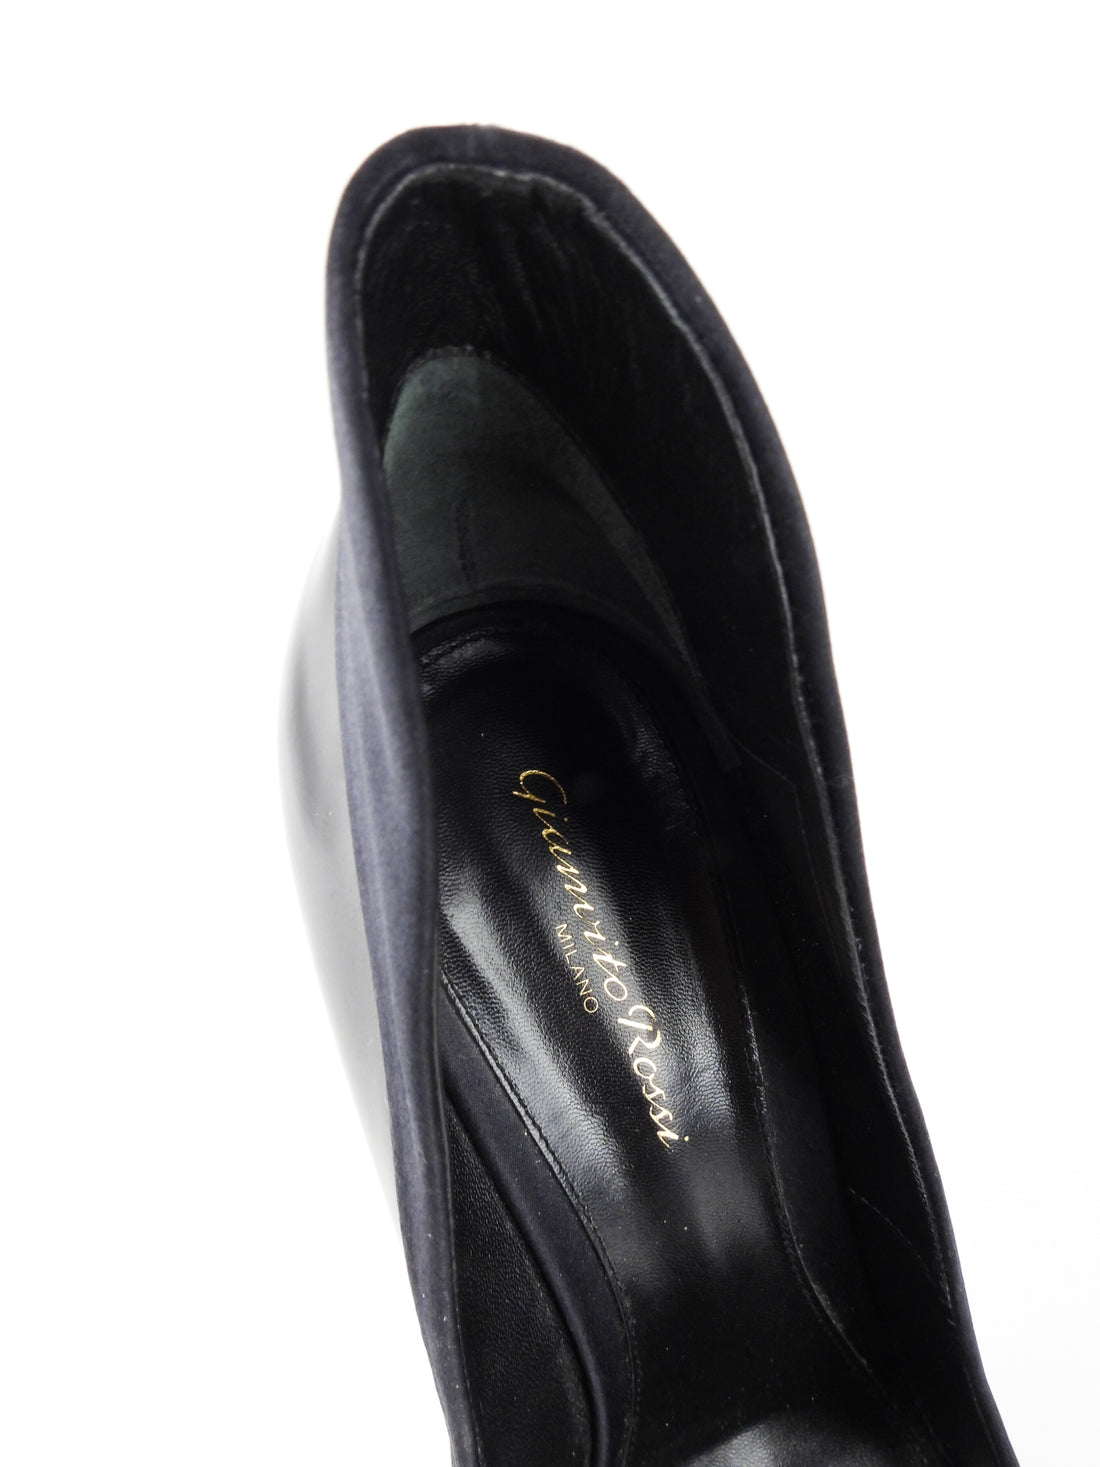 Gianvito Rossi Black Patent Leather and Satin Stiletto Heel Pump - 41